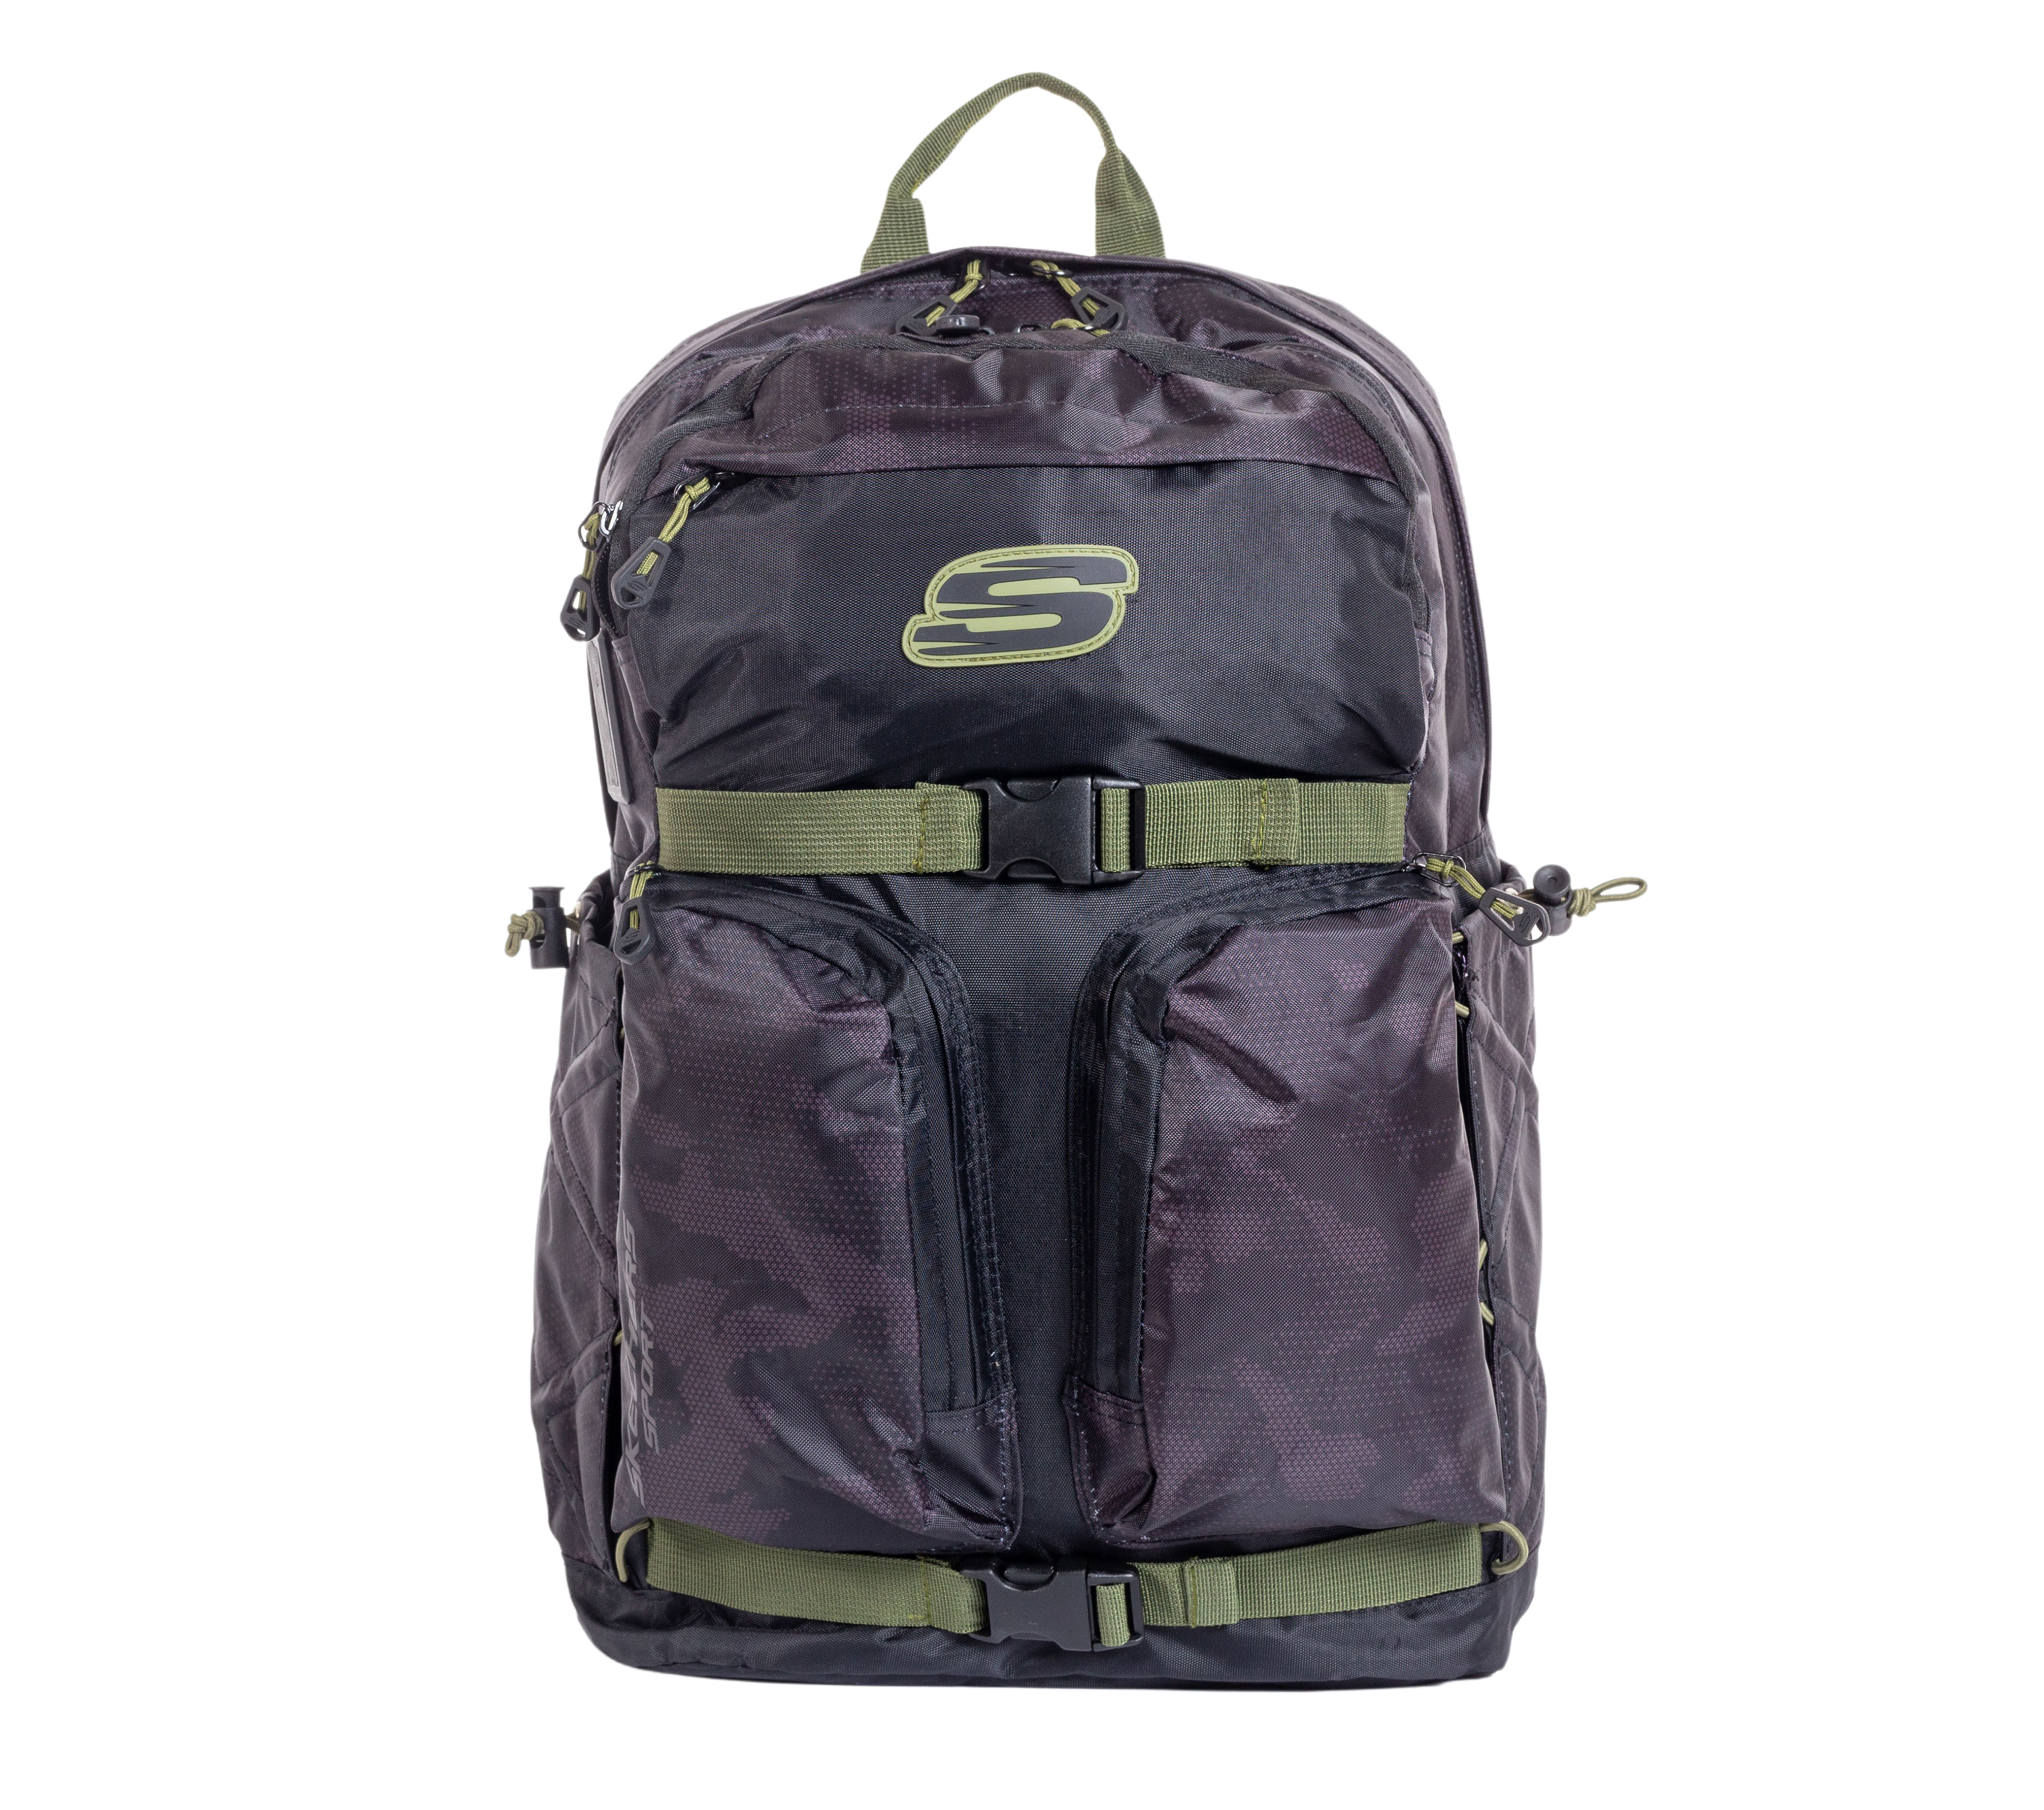 Intrekking stoomboot Zwaaien Discoverer Backpack | SKECHERS